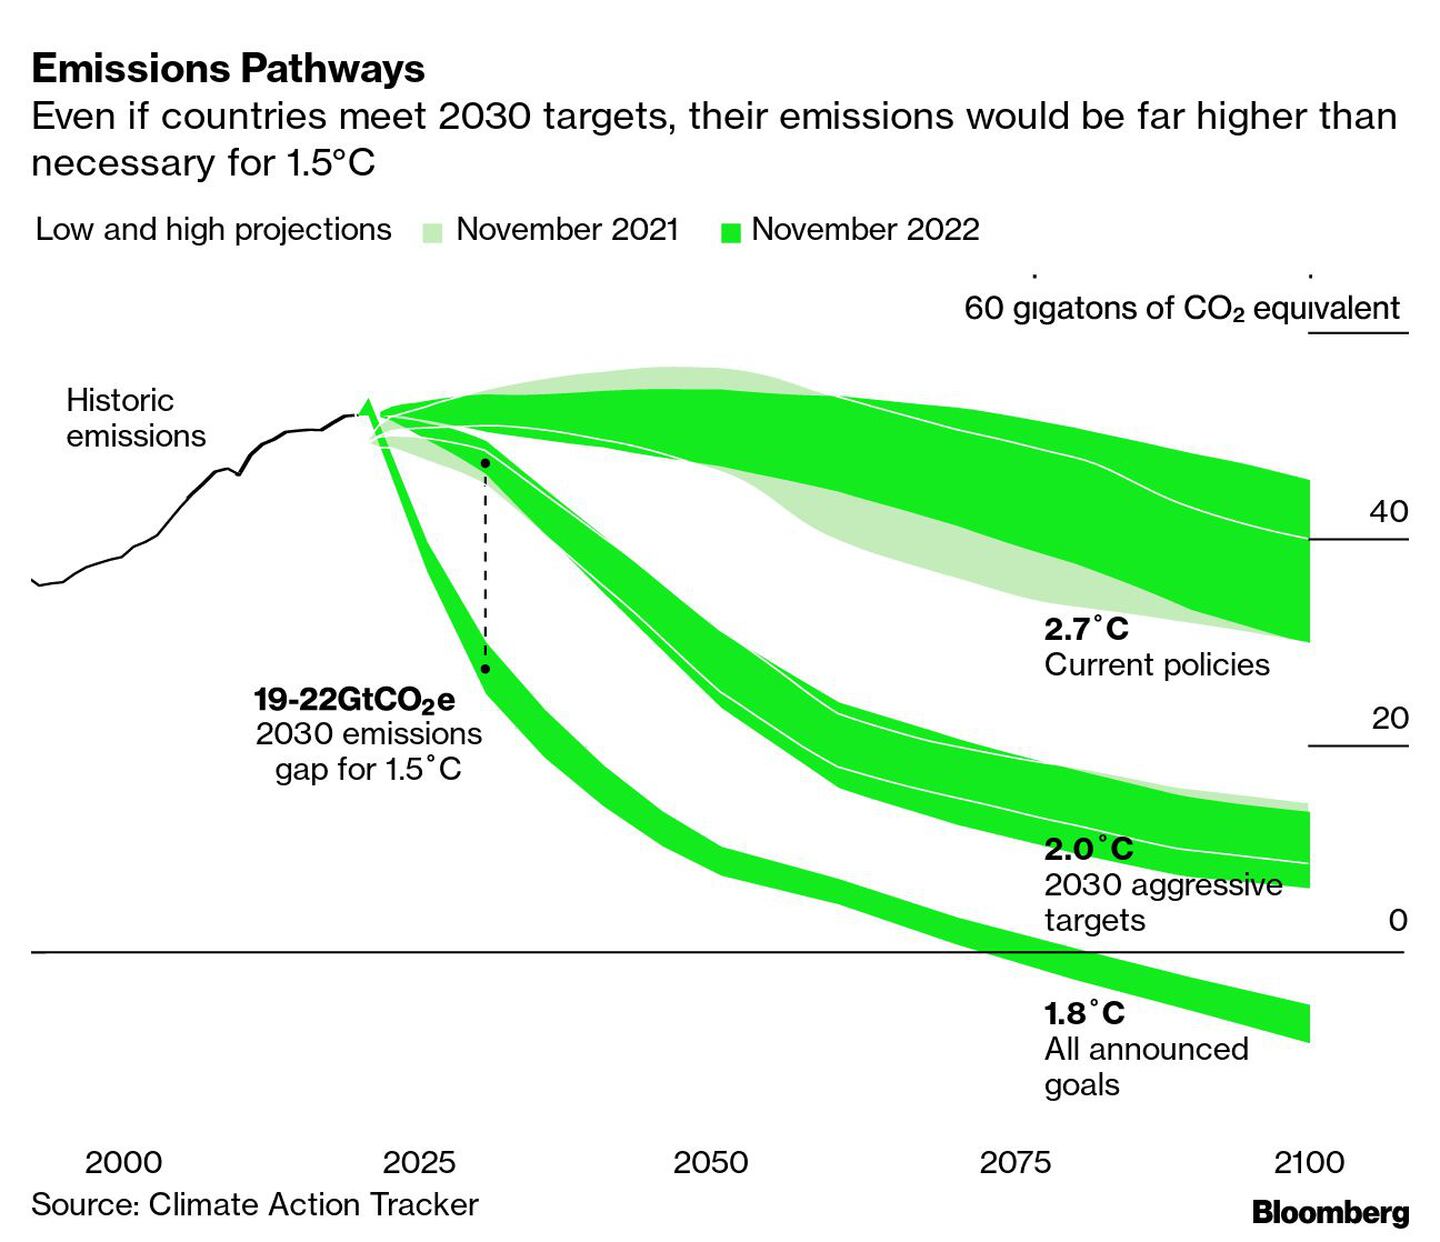 Incluso si los países cumplen los objetivos de 2030, sus emisiones serían muy superiores a las necesarias para alcanzar 1,5°C.dfd